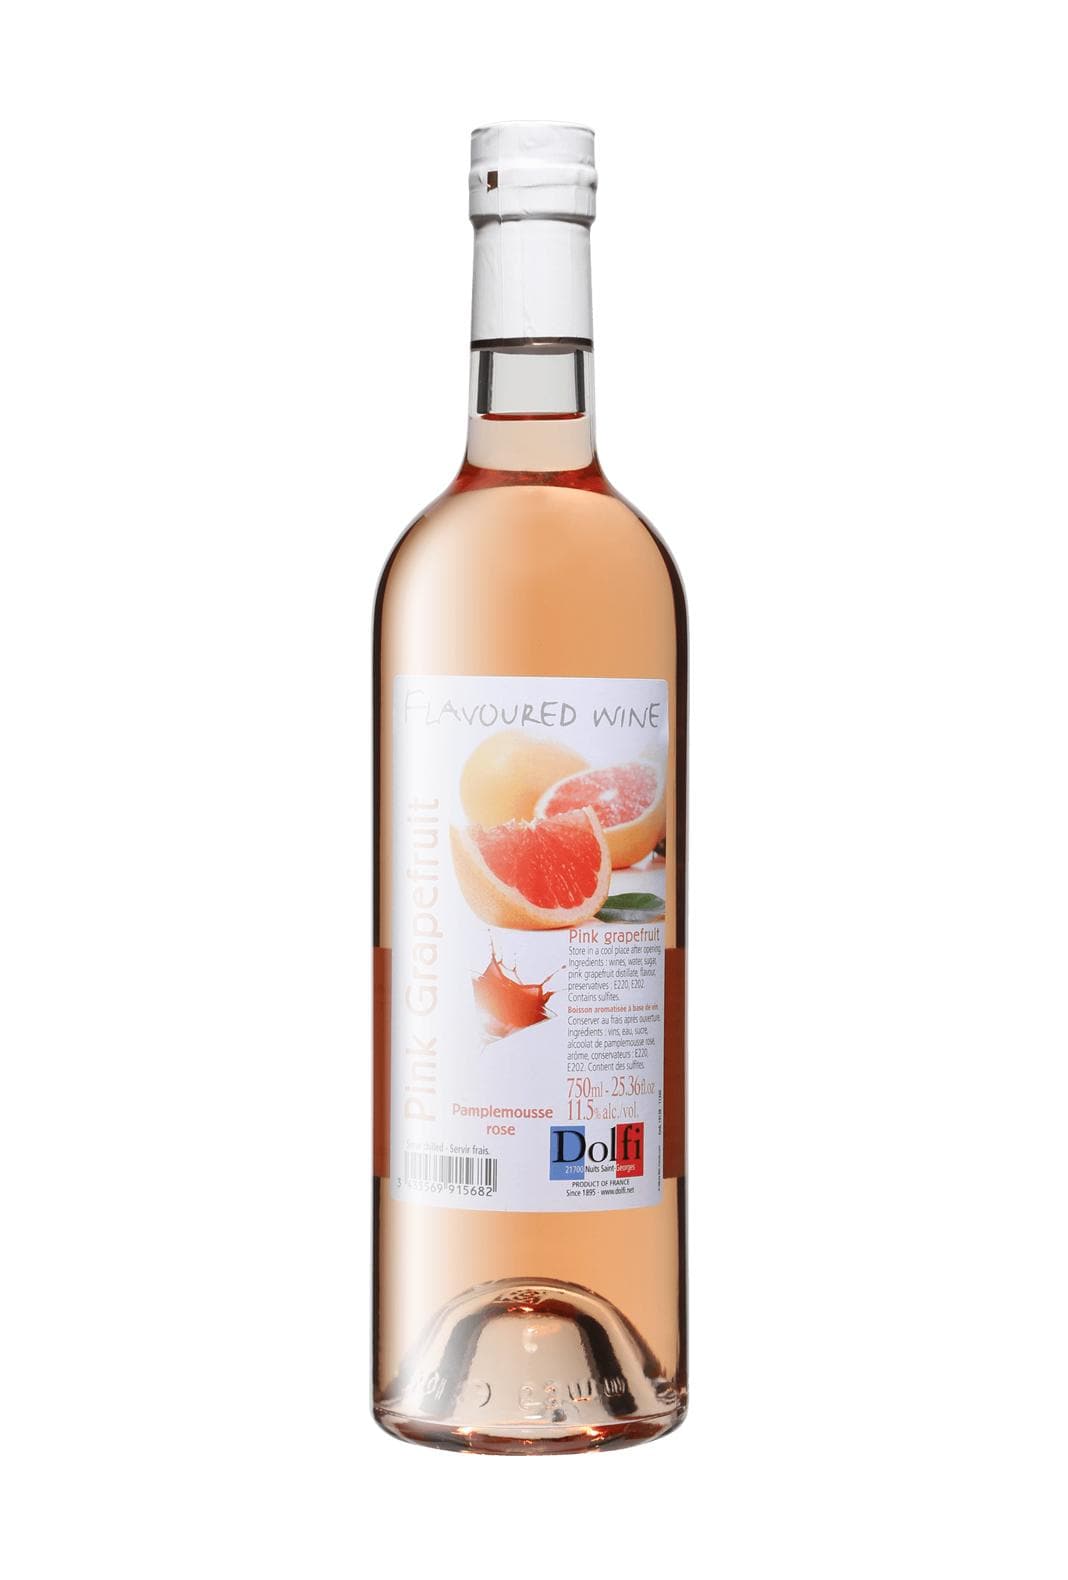 Dolfi Wine Pink Grapefruit (Pamplemouse Rose) 11.5% 750ml | Wine | Shop online at Spirits of France